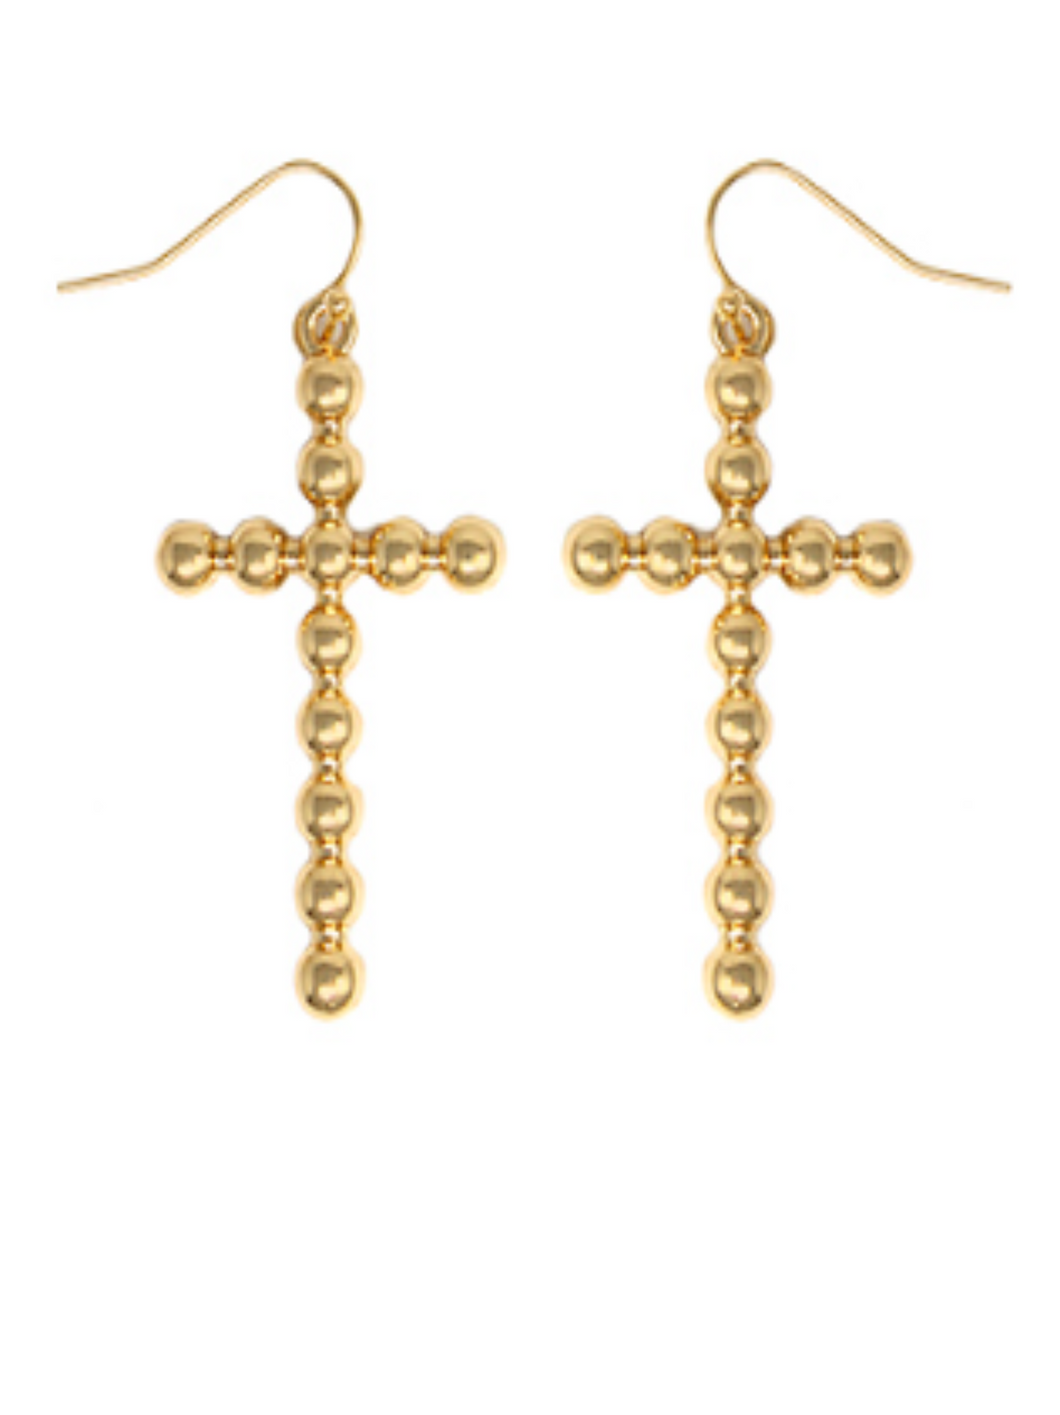 Bubble Cross Earrings: Gold